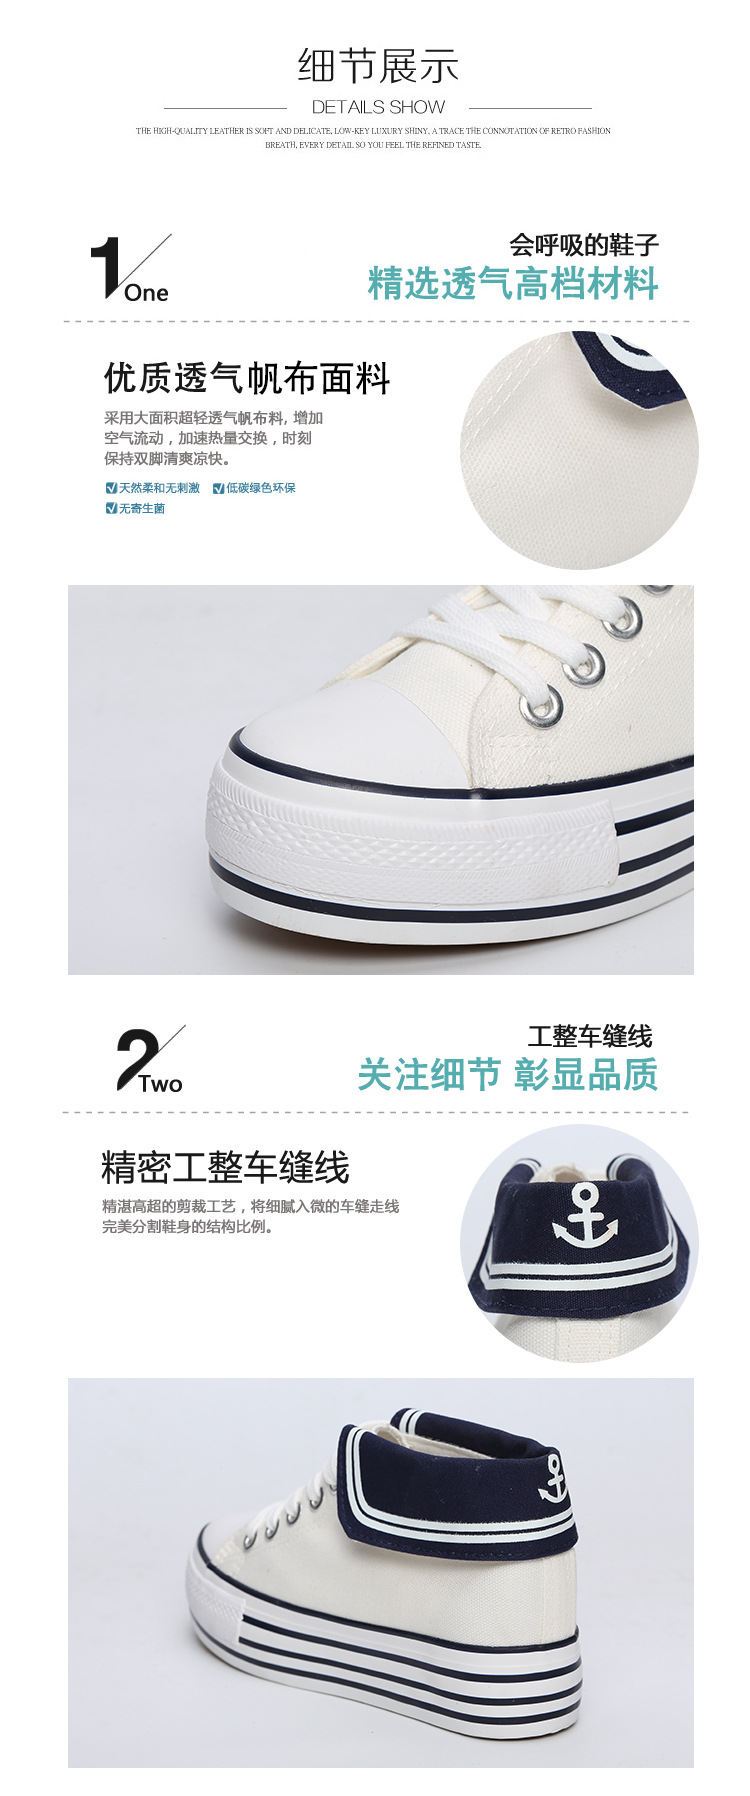 新款韩版帆布鞋女内增高低帮系带海军风女式布鞋学生休闲鞋